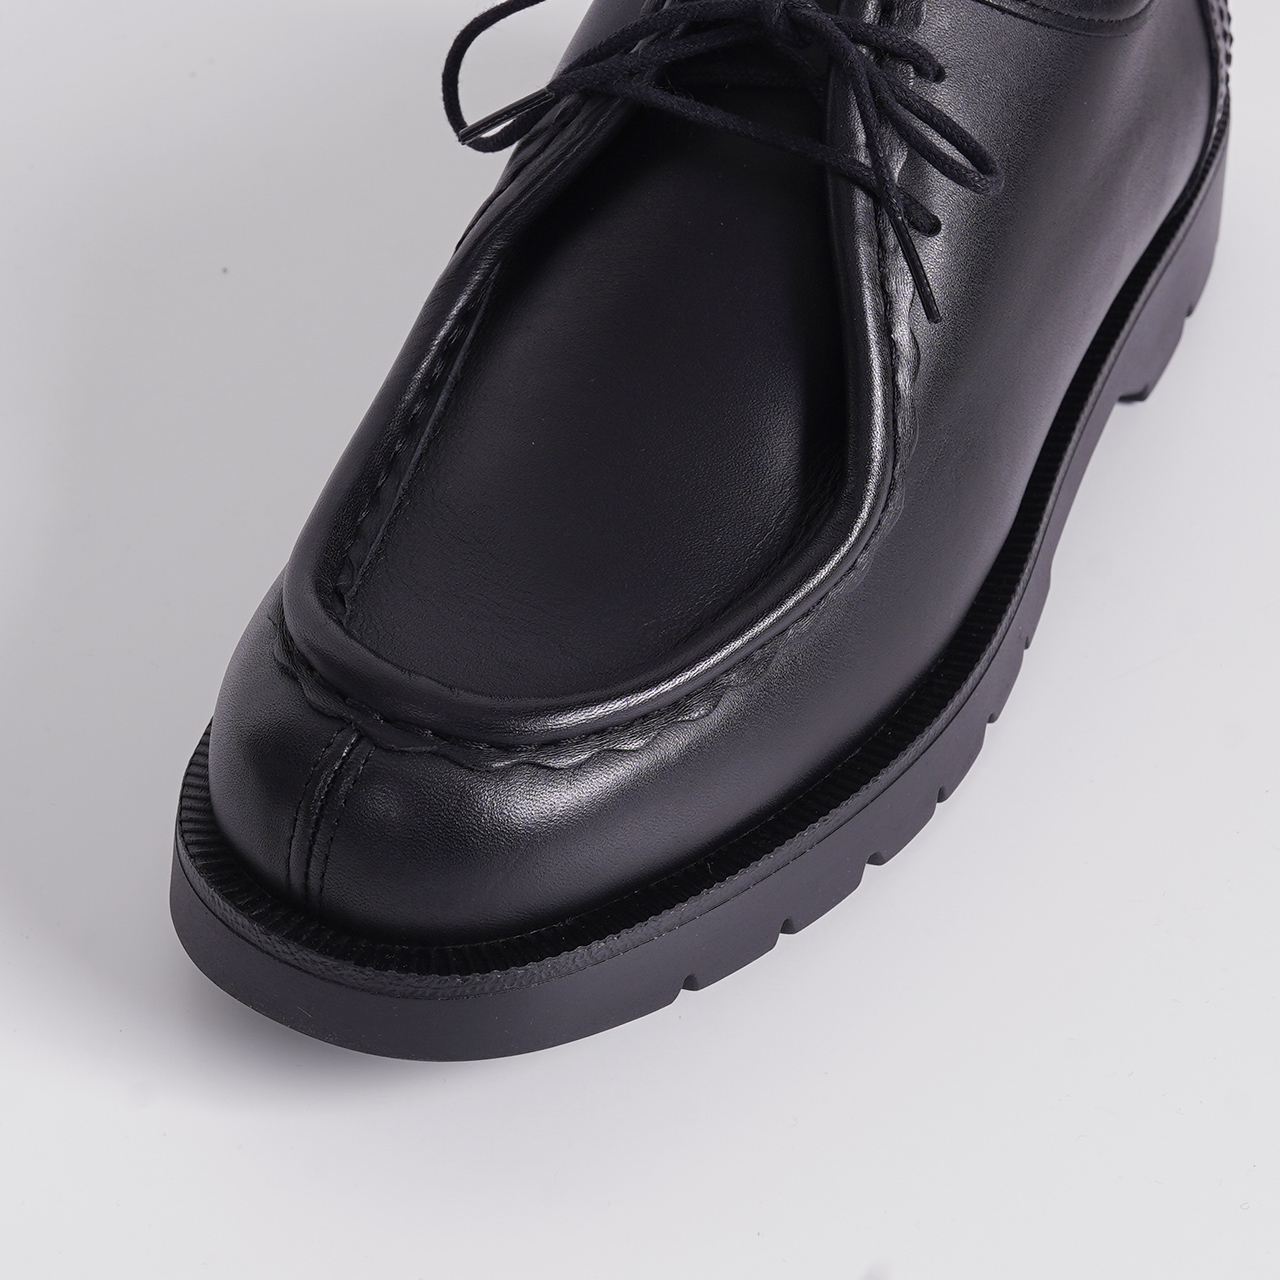 クレマン KLEMAN 革靴 パドレ PADROR(PADRE) チロリアン シューズ シボ レースアップ メンズ 【送料無料】 |  Crouka／クローカ